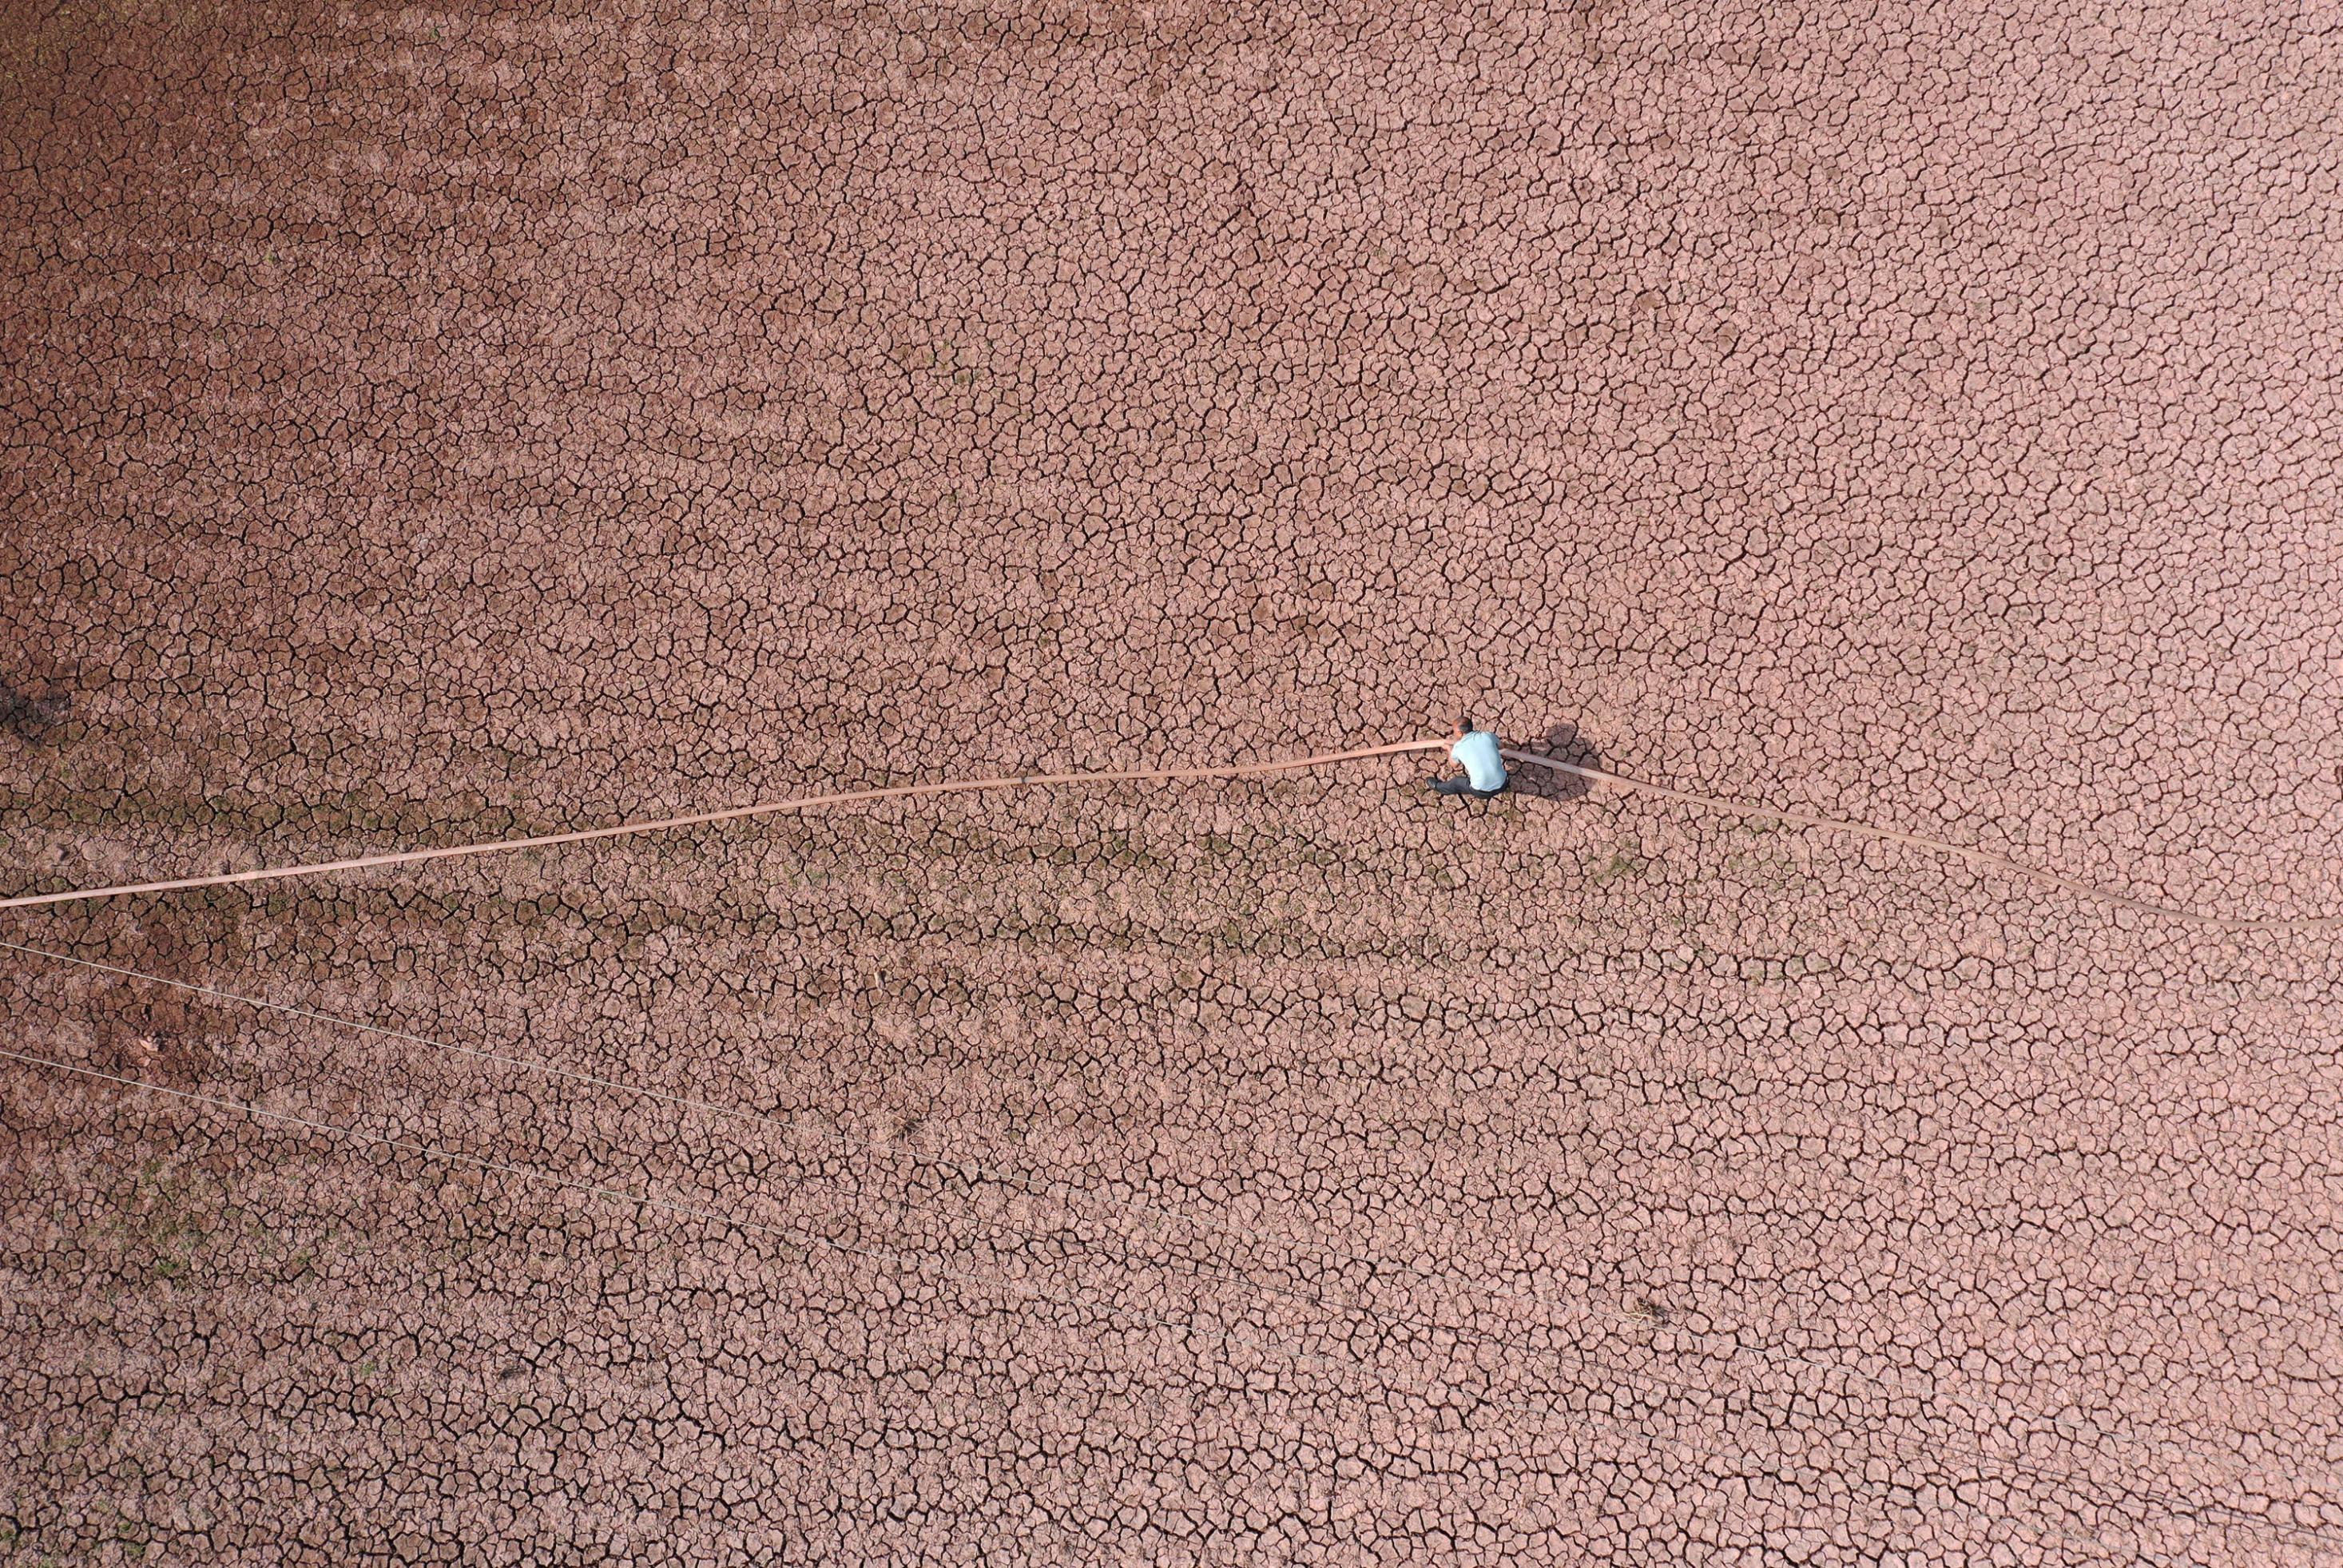 Luftaufnahme eines ausgetrockneten Feldes mit rissigem Boden, auf das ein Bauer einen Wasserschlauch zieht.